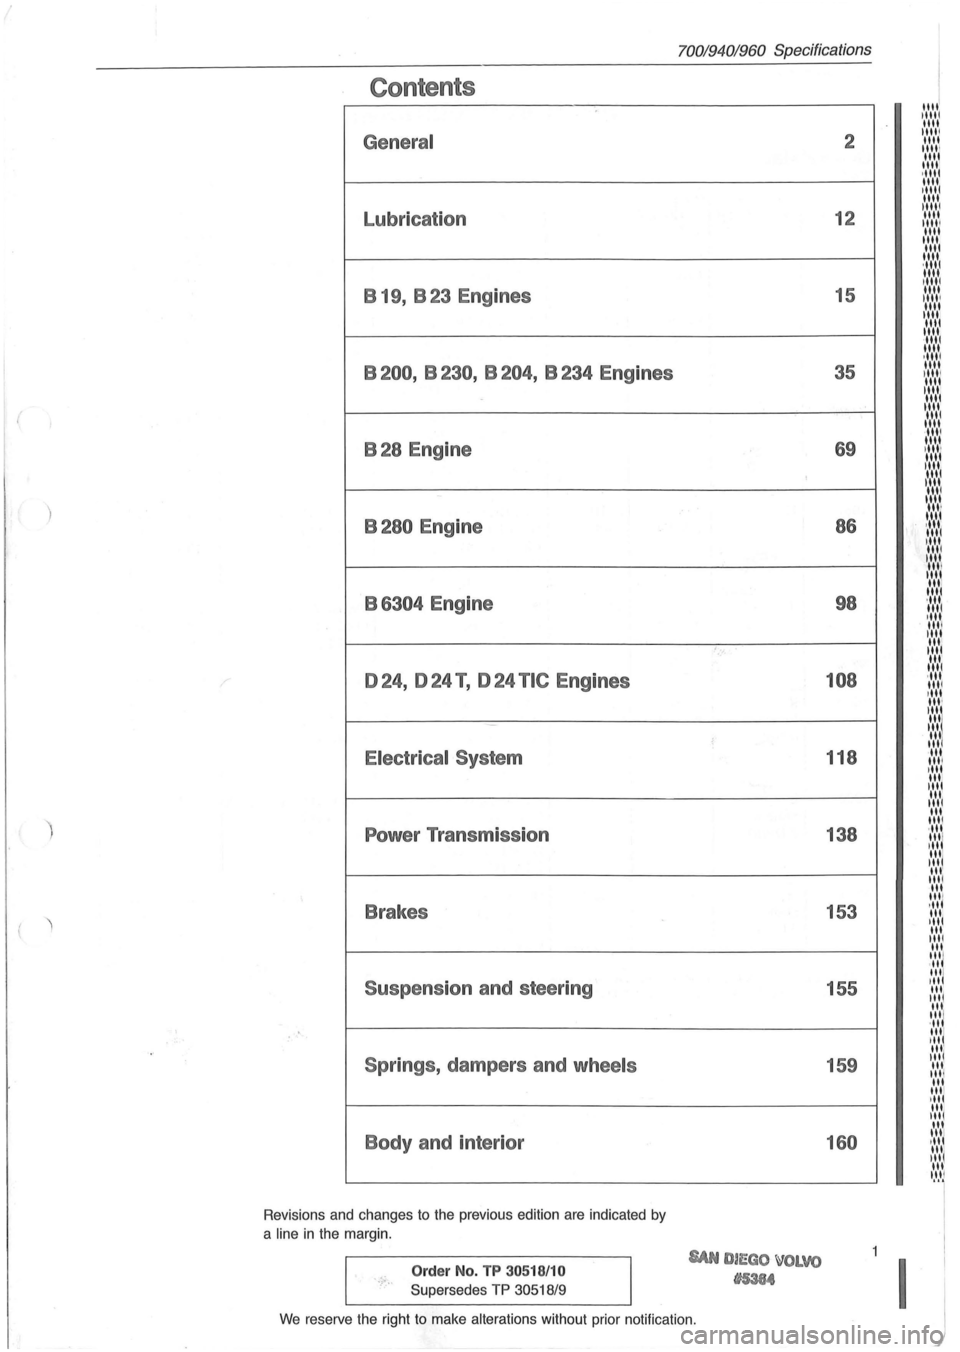 VOLVO 700 1982  Service Repair Manual ( 
) 
Contents 
General 
Lubrication B  19,  B 23  Engines 
B200,  B230, B204, B234 Engines 
B28 Engine 
B280 Engine 
B 
6304 Engine 
024, 024 T , 024 TIC Engines 
Electrical  System 
Power Transmissi